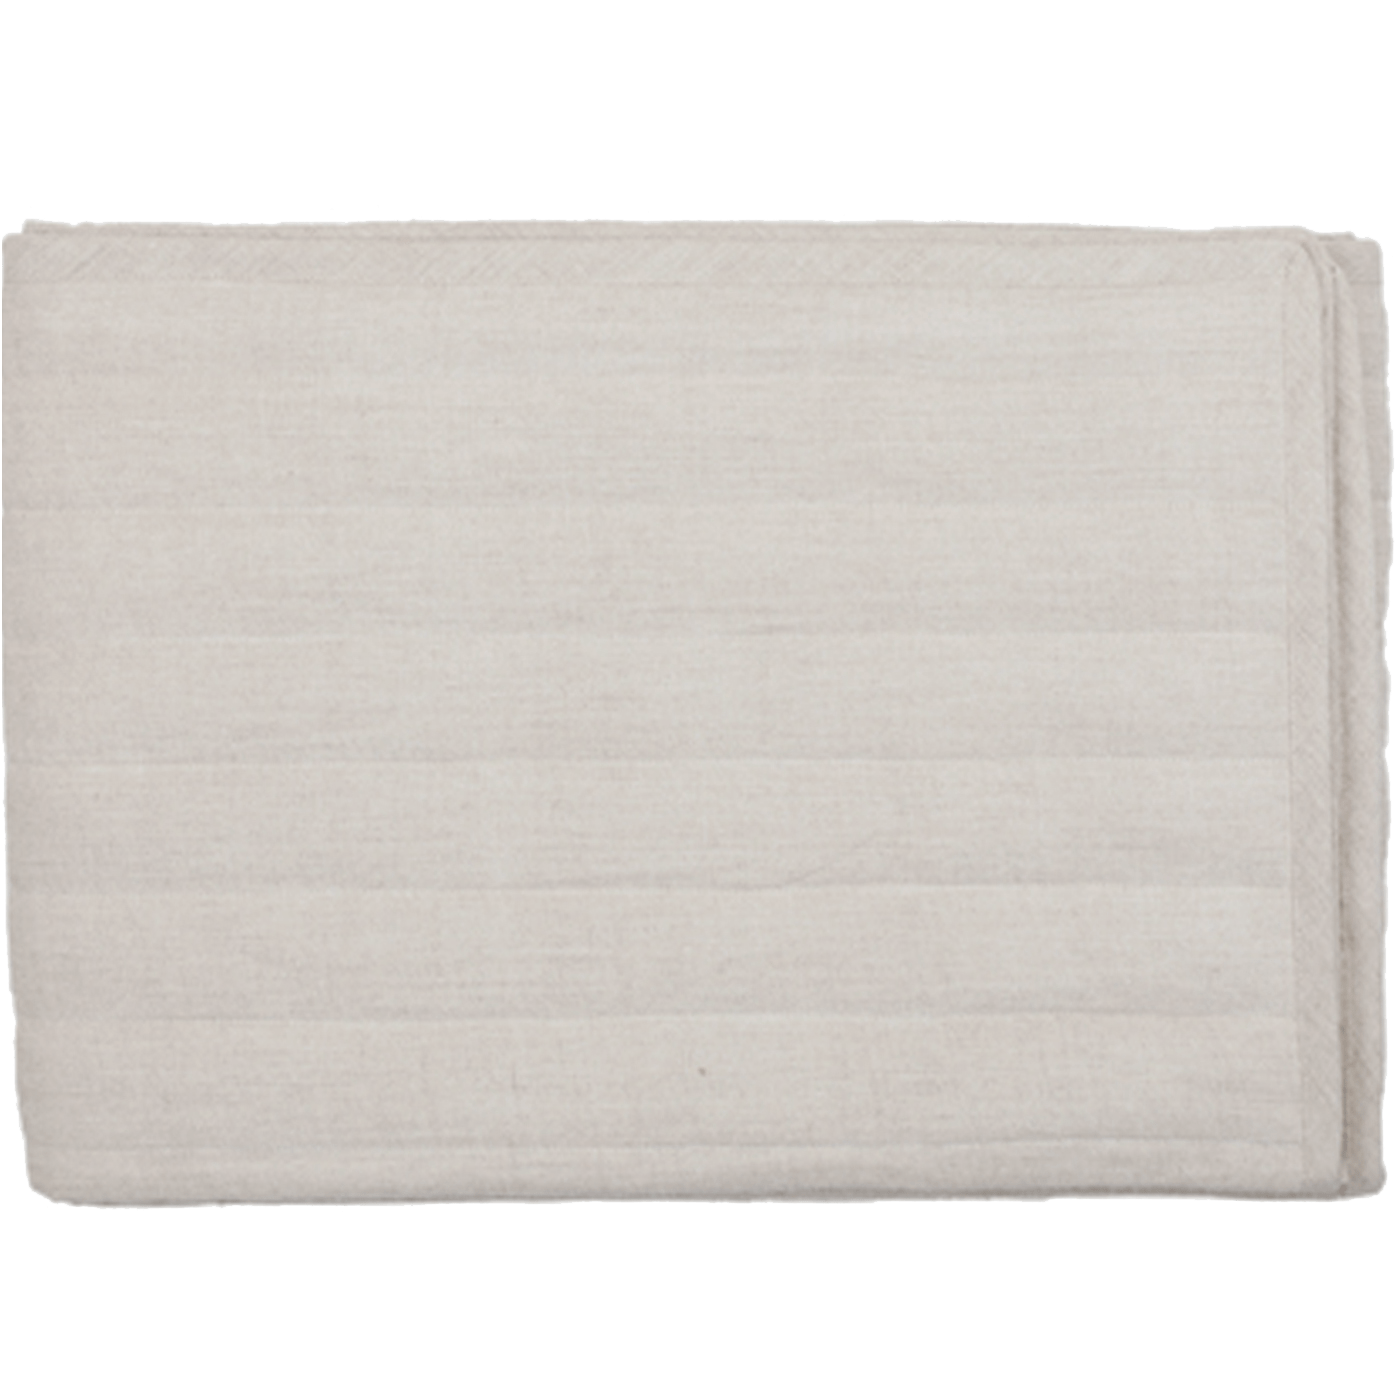 Linen Bedsash 76x229cm